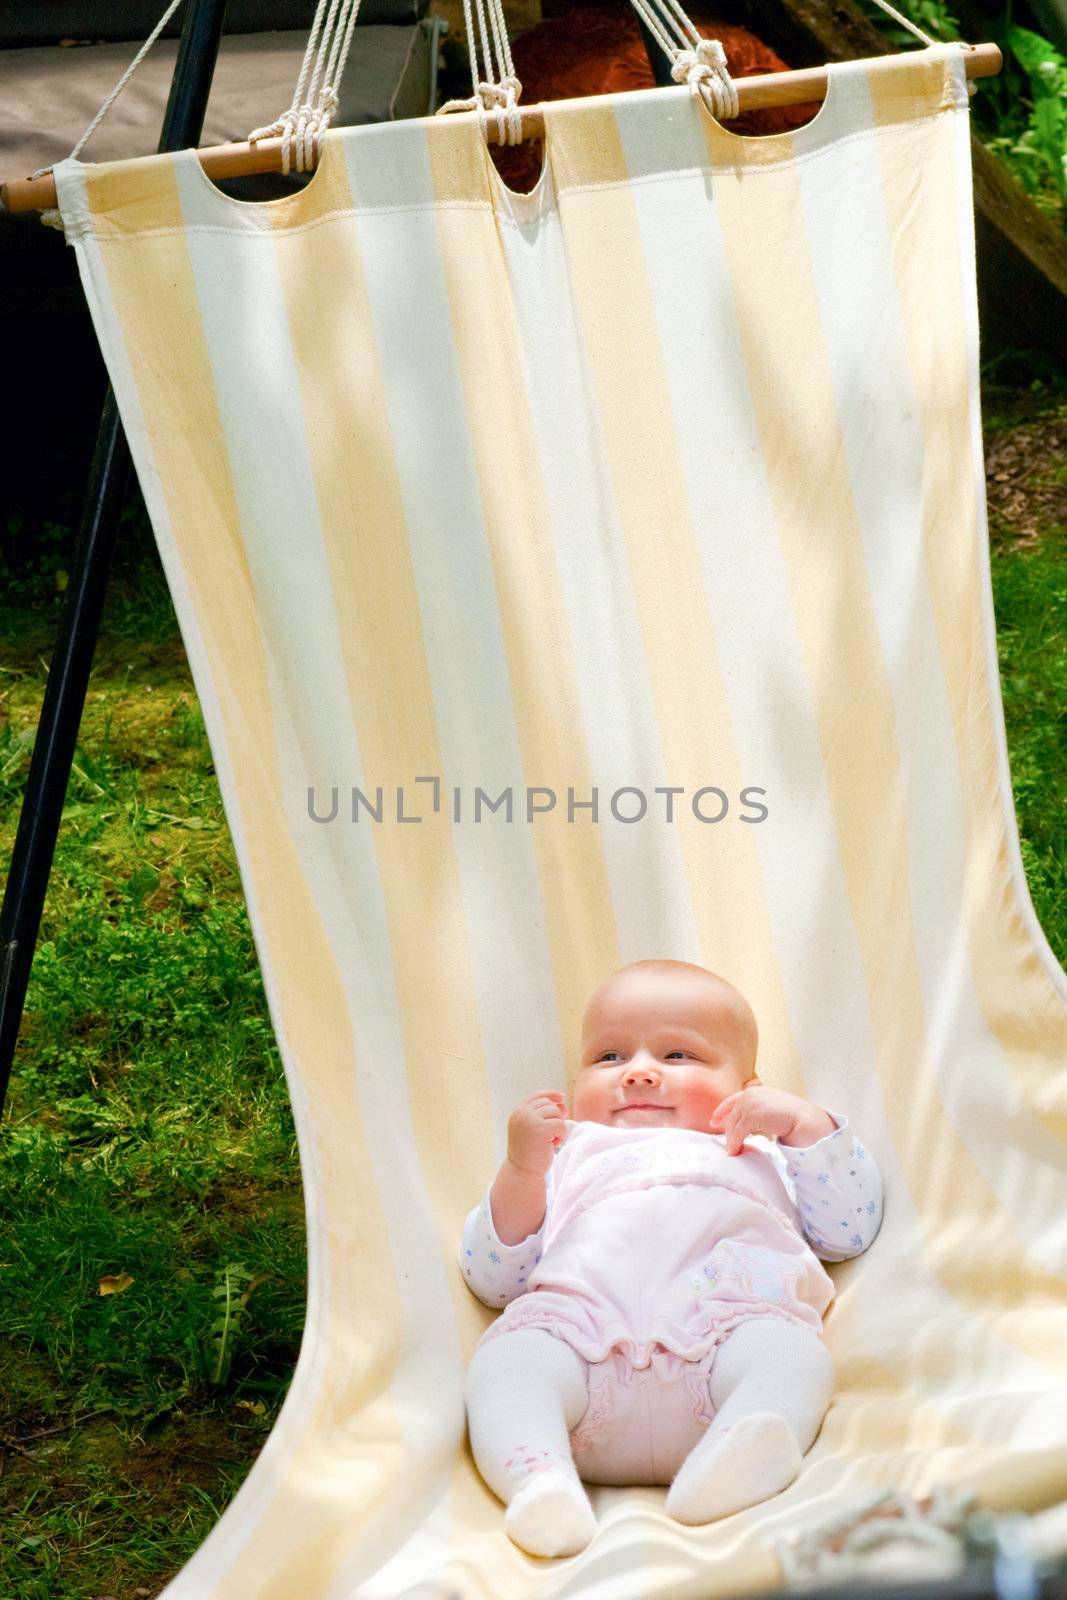 Infant in hammock by naumoid